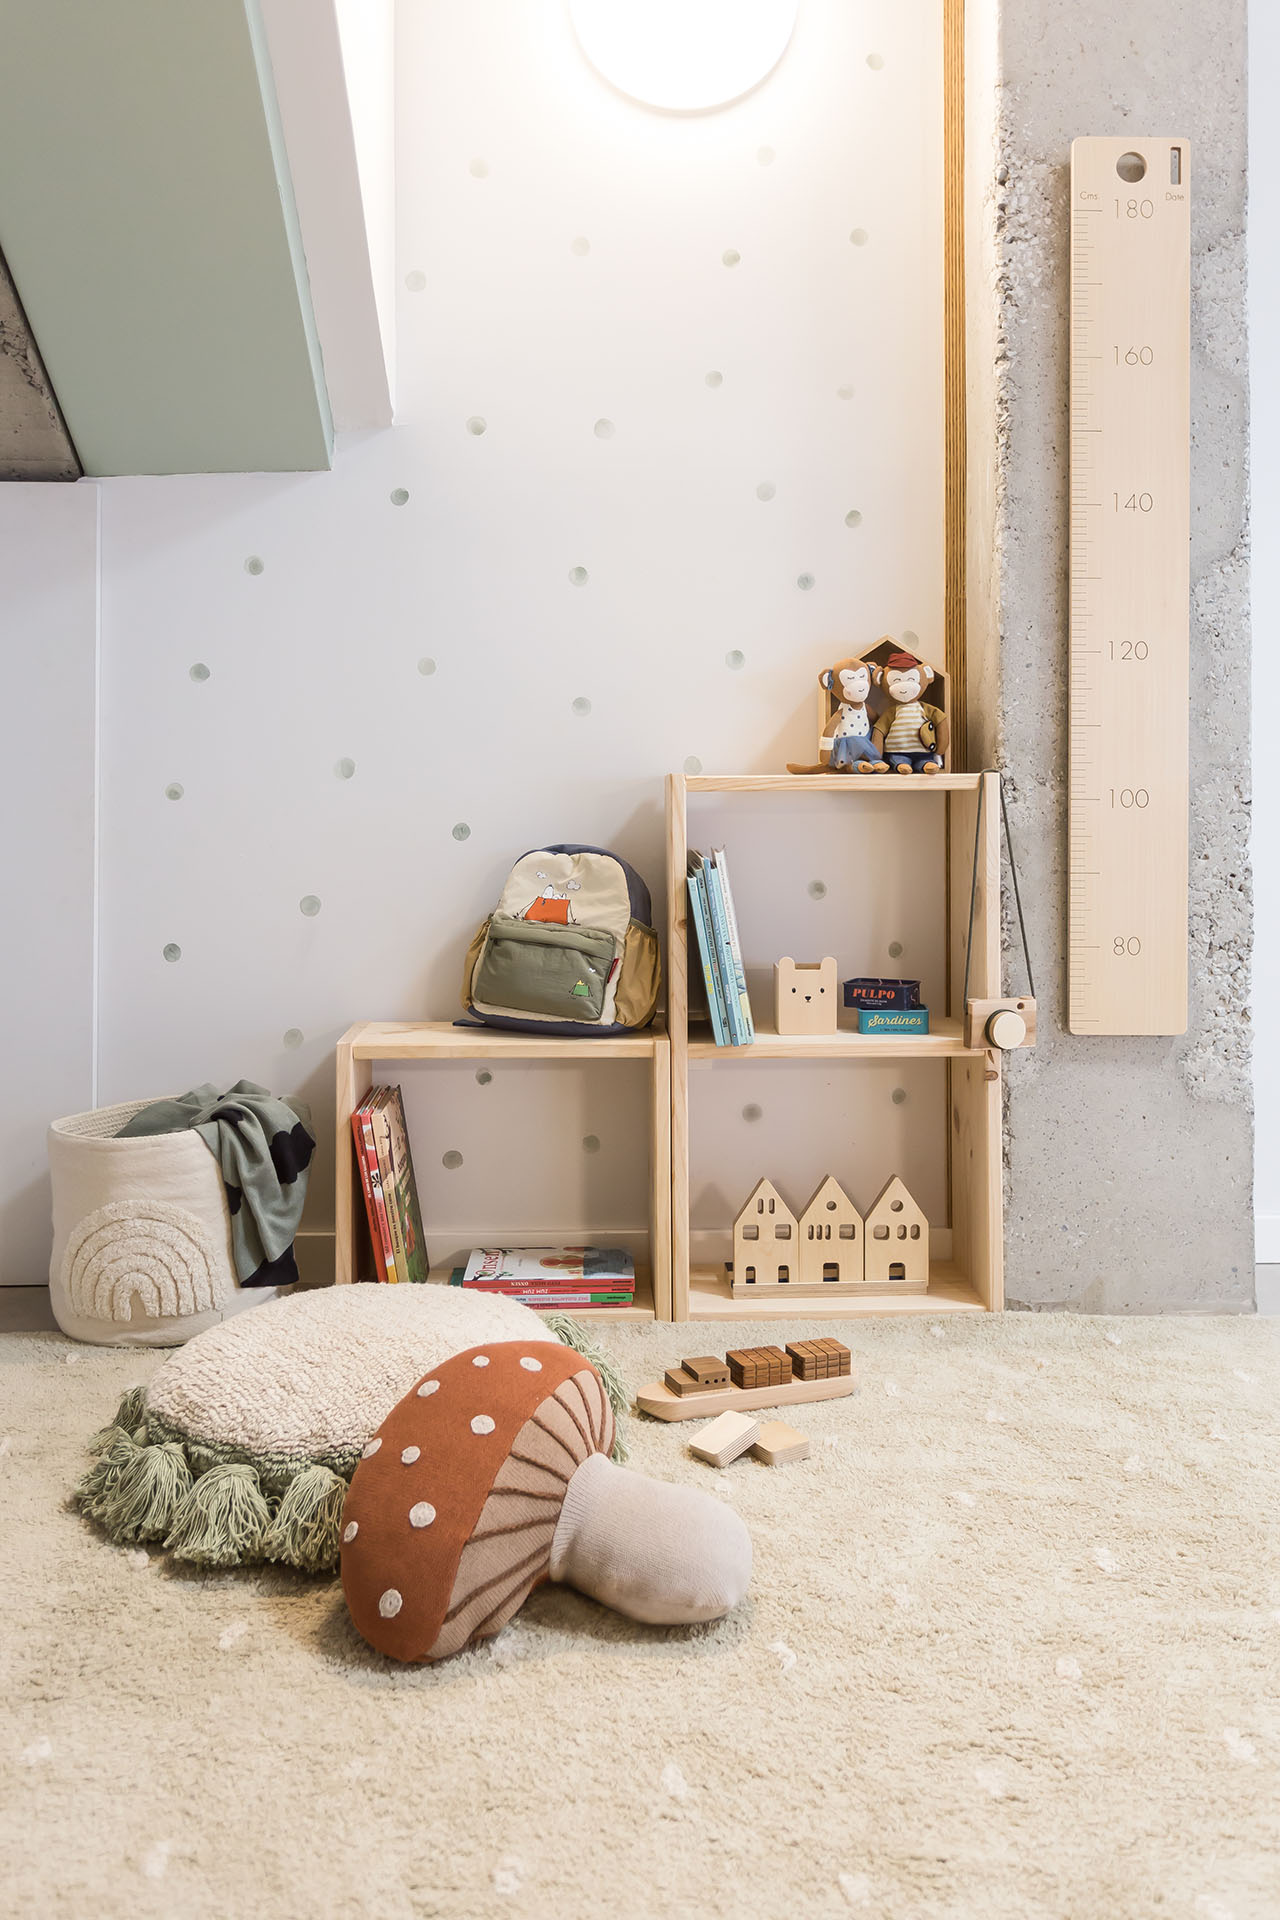 4 tipos de cómodas baratas para casa - Blog de Muebles baratos